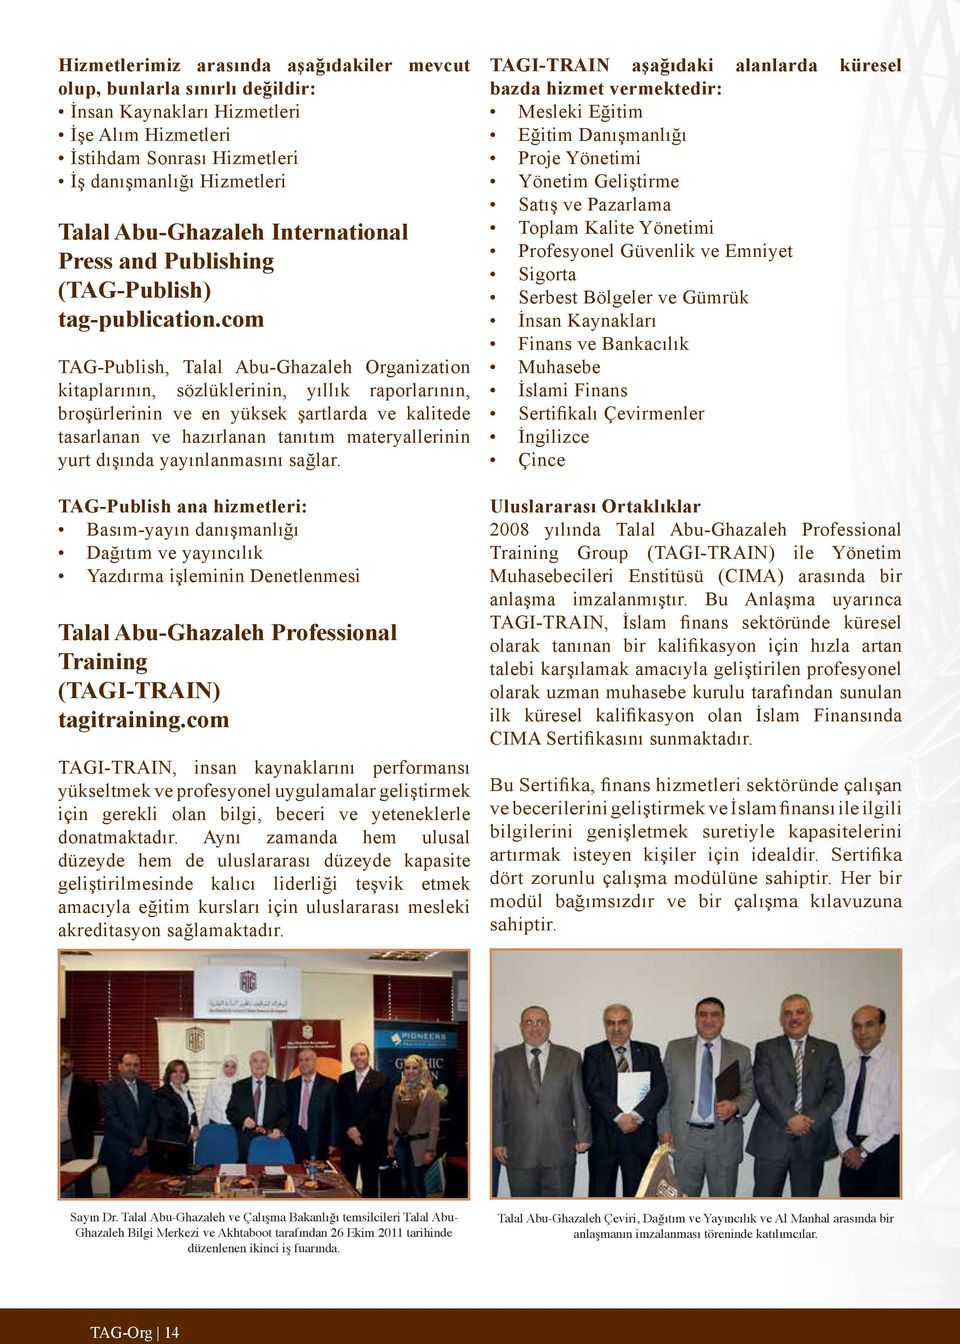 com TAG-Publish, Talal Abu-Ghazaleh Organization kitaplarının, sözlüklerinin, yıllık raporlarının, broşürlerinin ve en yüksek şartlarda ve kalitede tasarlanan ve hazırlanan tanıtım materyallerinin